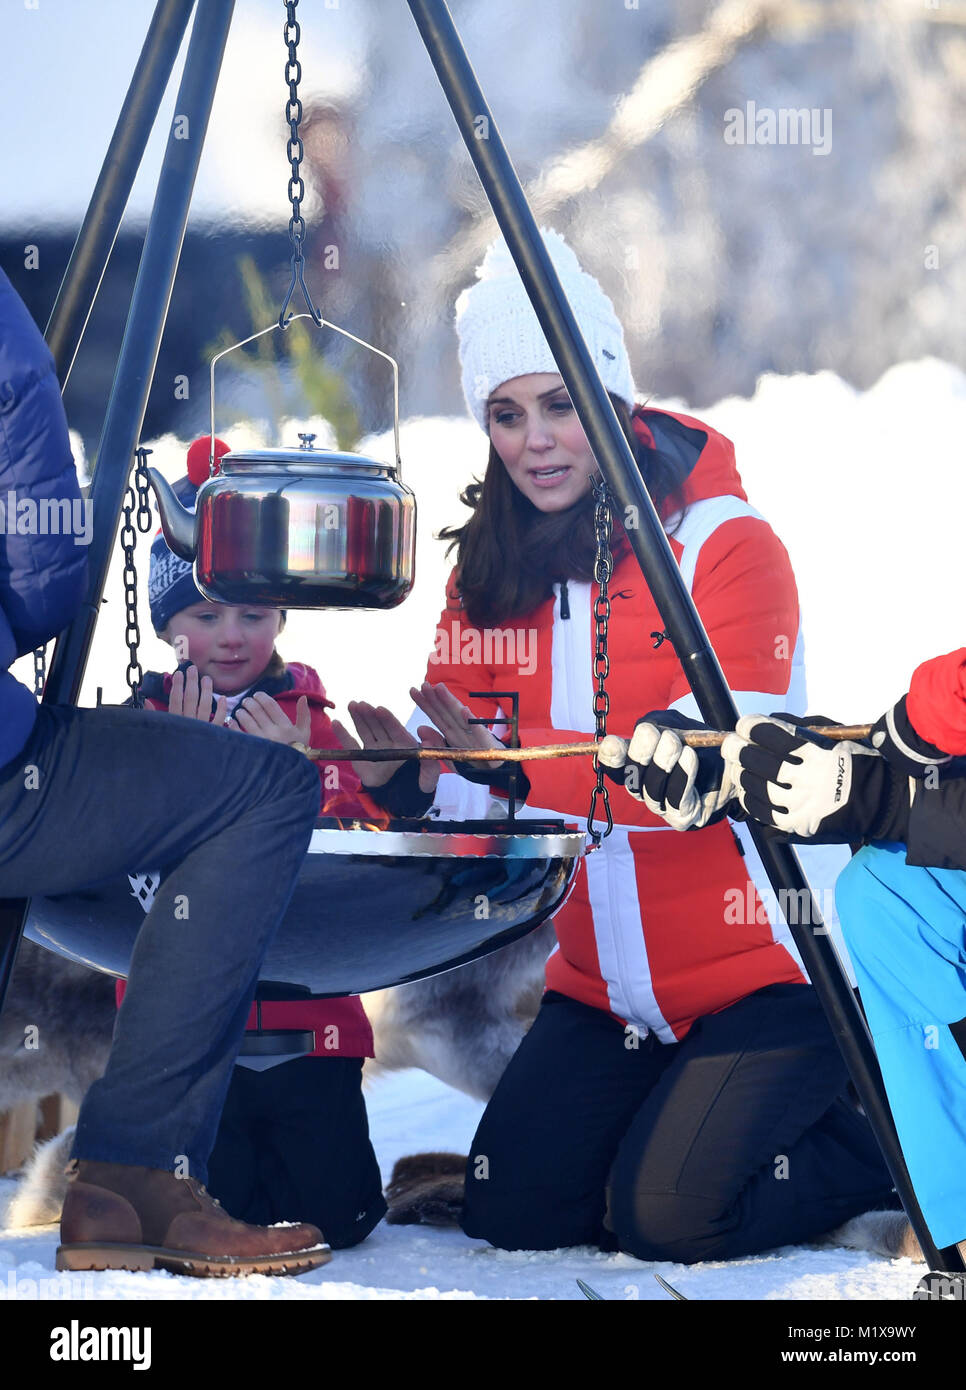 Die Herzogin von Cambridge an der Teilnahme in einer Tryvann, Oslo, Norwegen, die von der norwegischen Skiverbandes, wo Sie eine Gruppe von örtlichen Kindergarten Kinder, die an einem Nachmittag Skischule Session auf der Piste sah organisiert, am letzten Tag der Tour von Skandinavien. Stockfoto